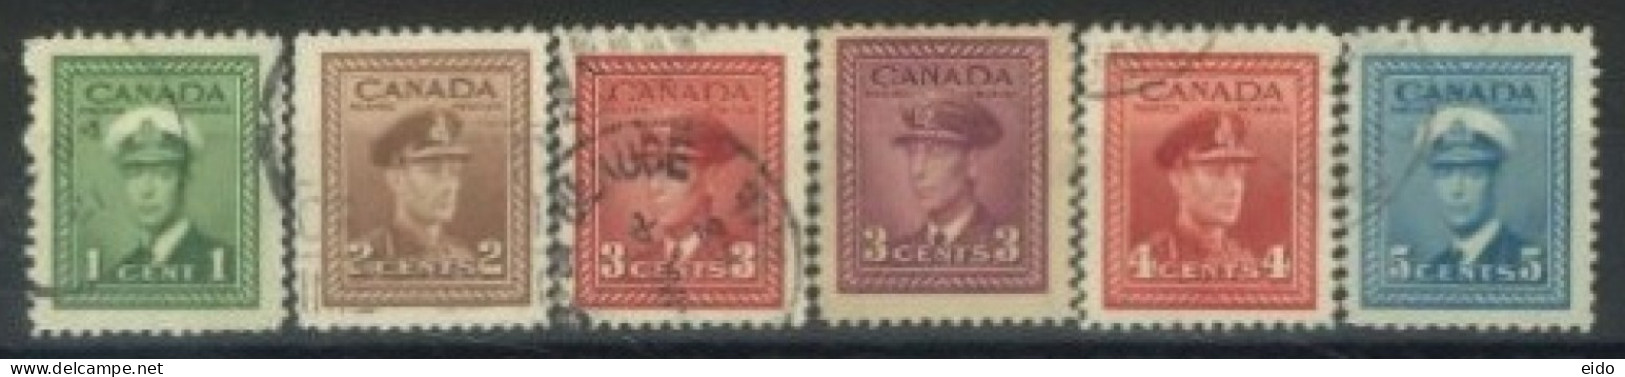 CANADA - 1942, KING GEORGE VI IN NAVAL UNIFORM STAMPS SET OF 6, USED. - Gebruikt